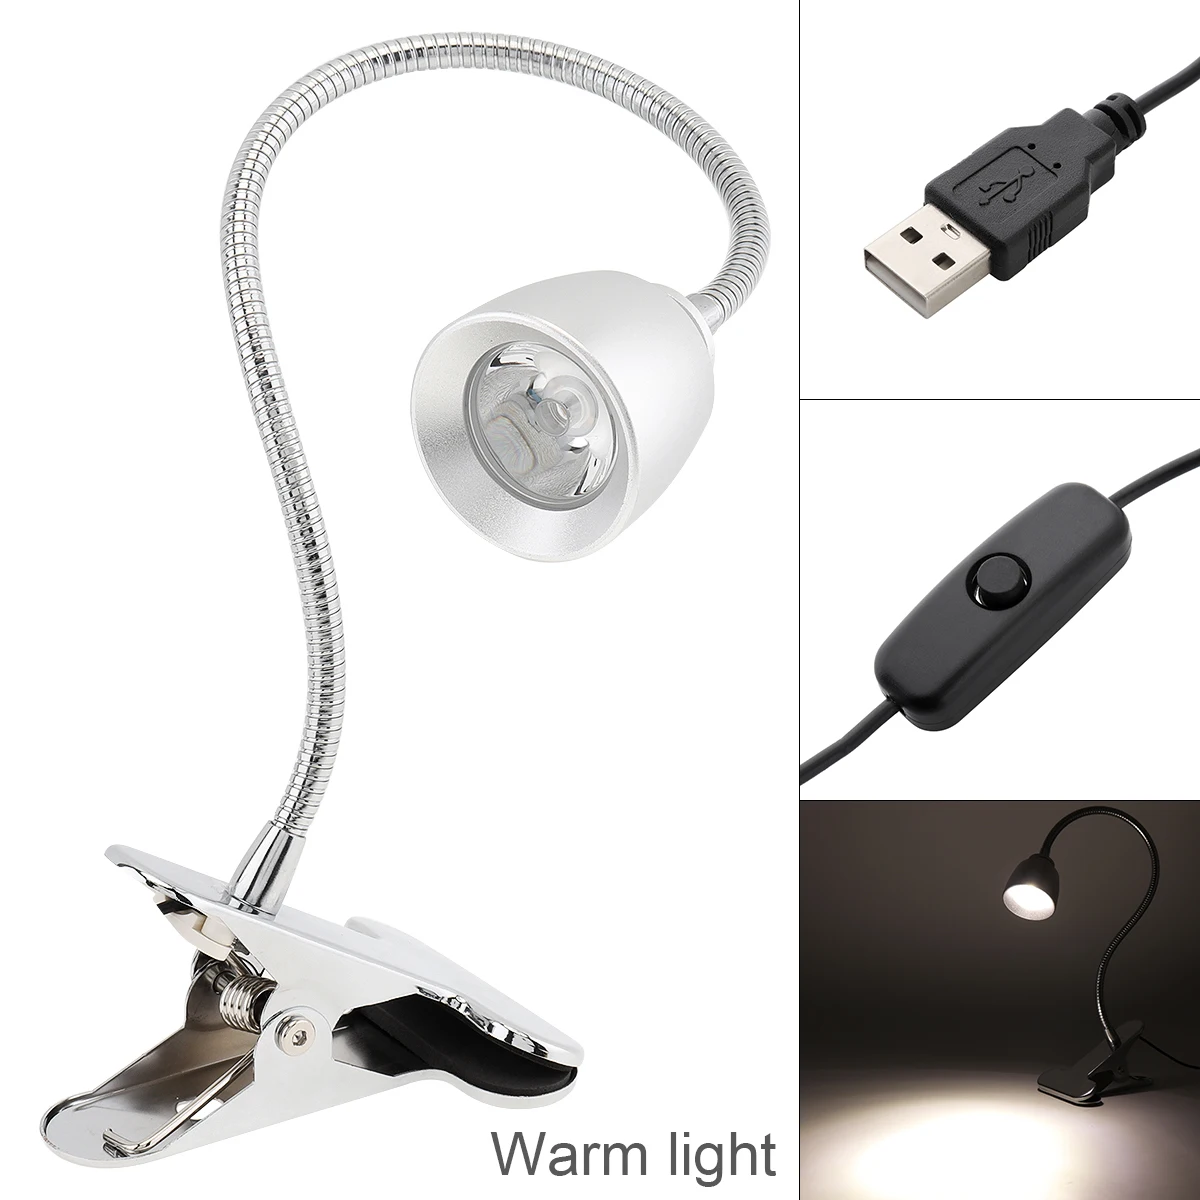 

Настольная лампа 3 Вт, 4 режима, приглушаемая Светодиодная лампа с USB-разъемом и зажимом, теплый светильник, настольная лампа с защитой глаз для студентов, с конусной головкой для обучения